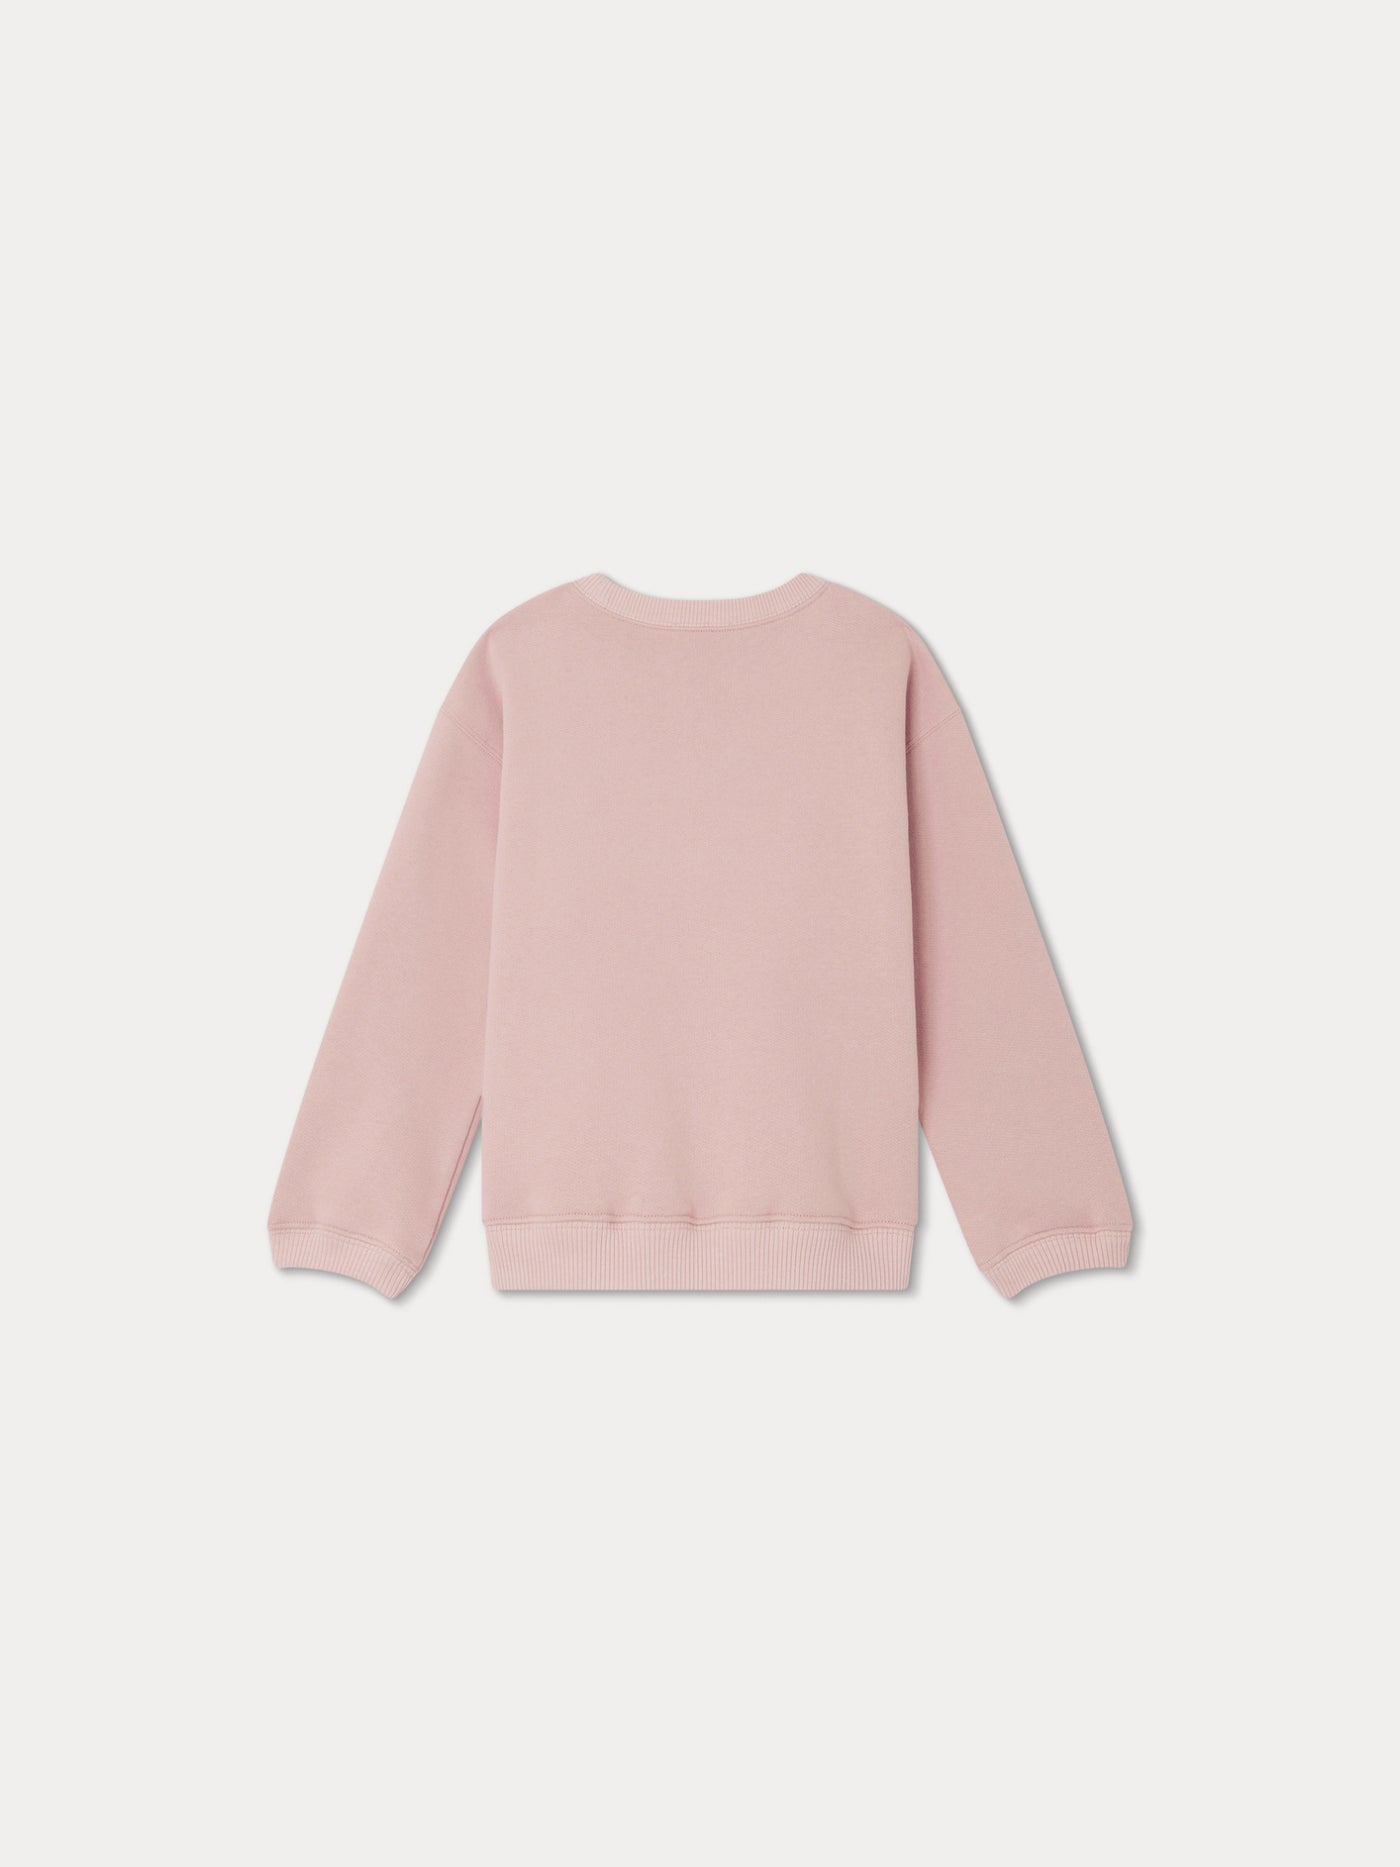 Tayla Sweatshirt faded pink